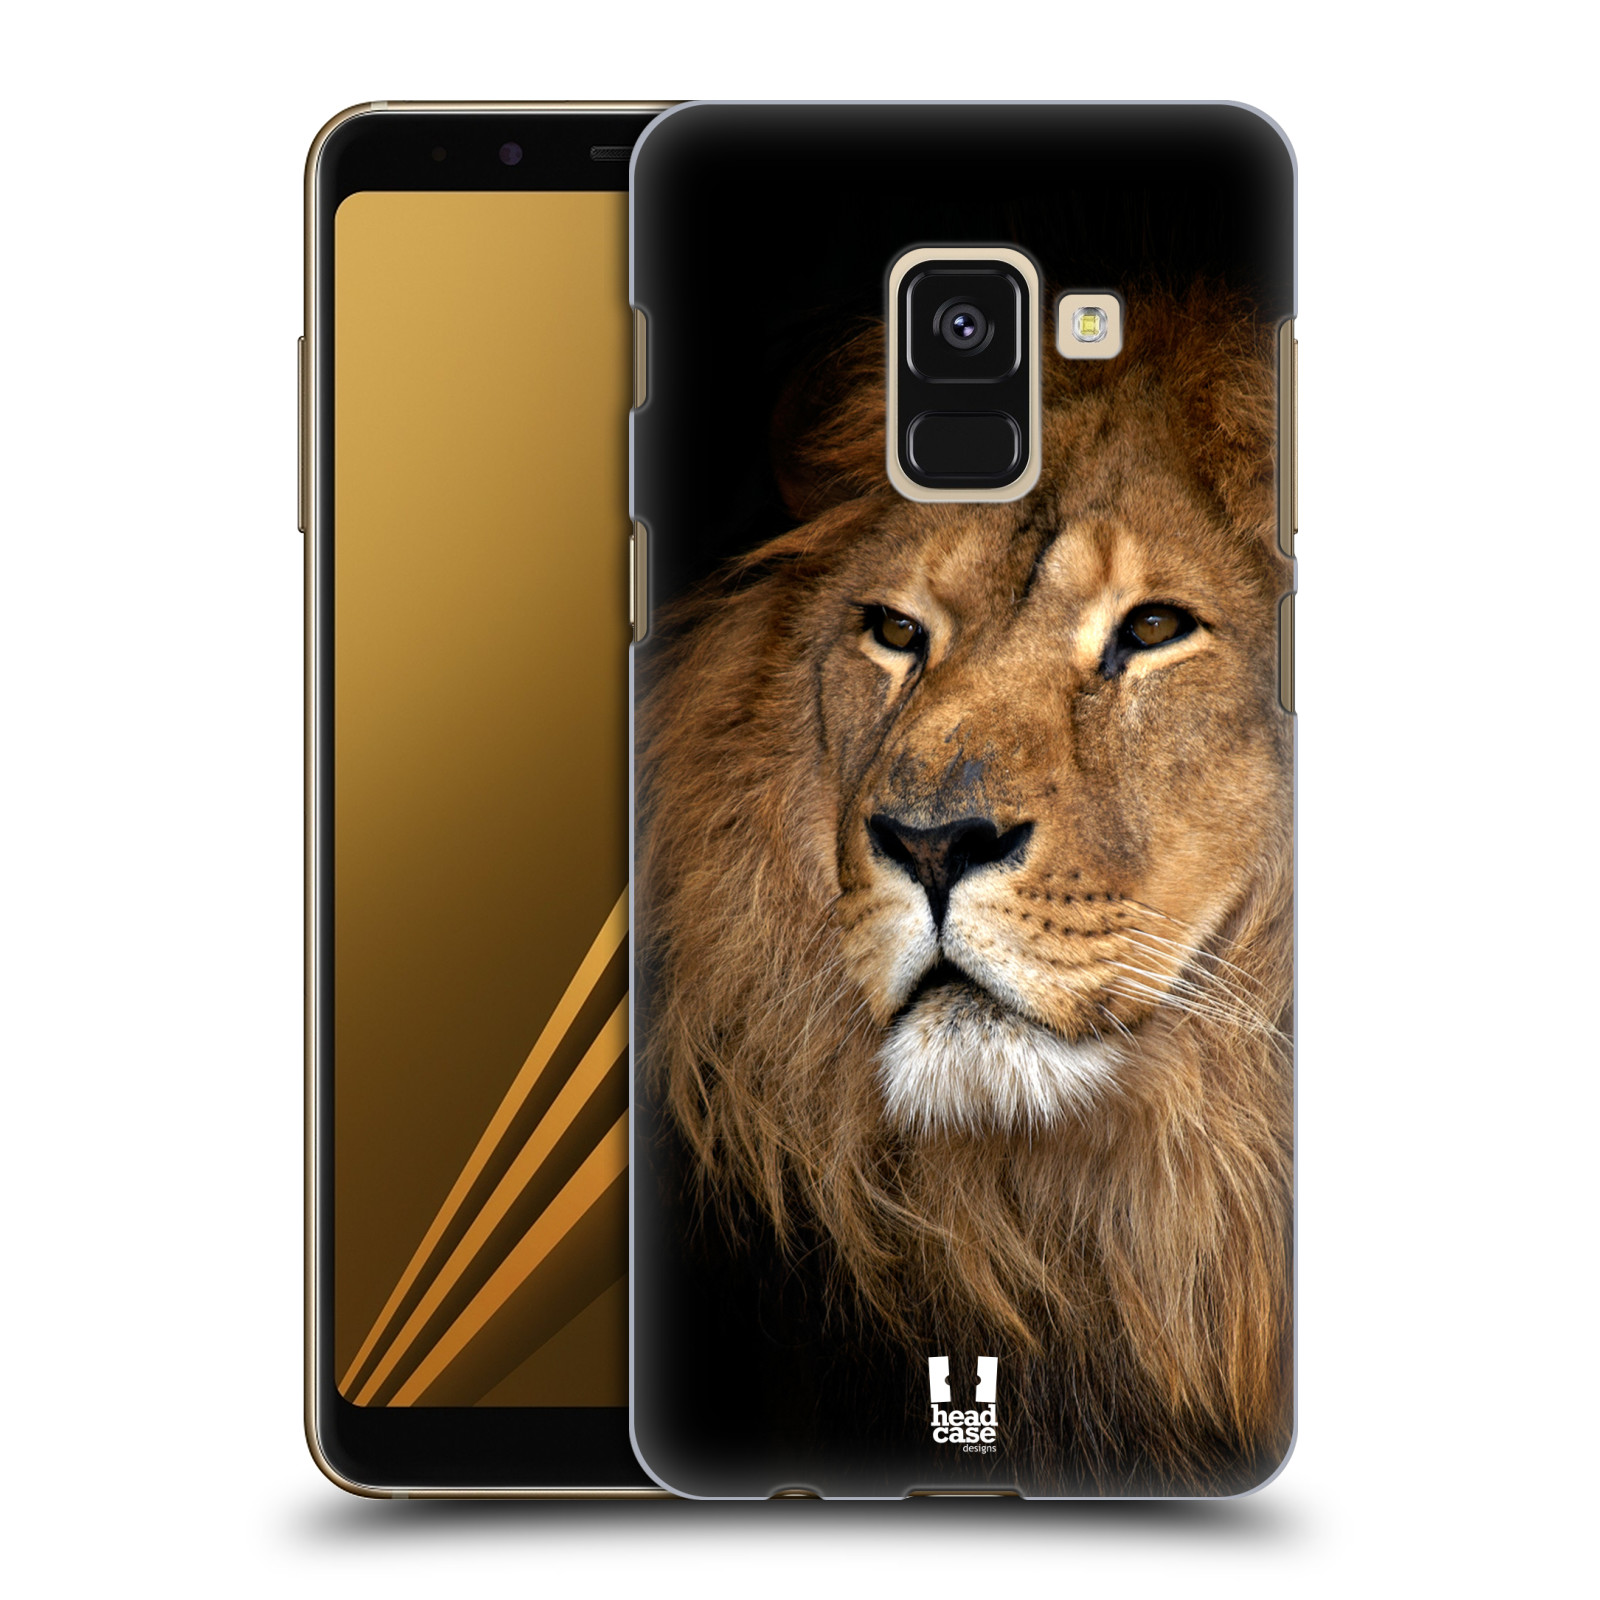 Zadní obal pro mobil Samsung Galaxy A8+ - HEAD CASE - Svět zvířat král zvířat Lev